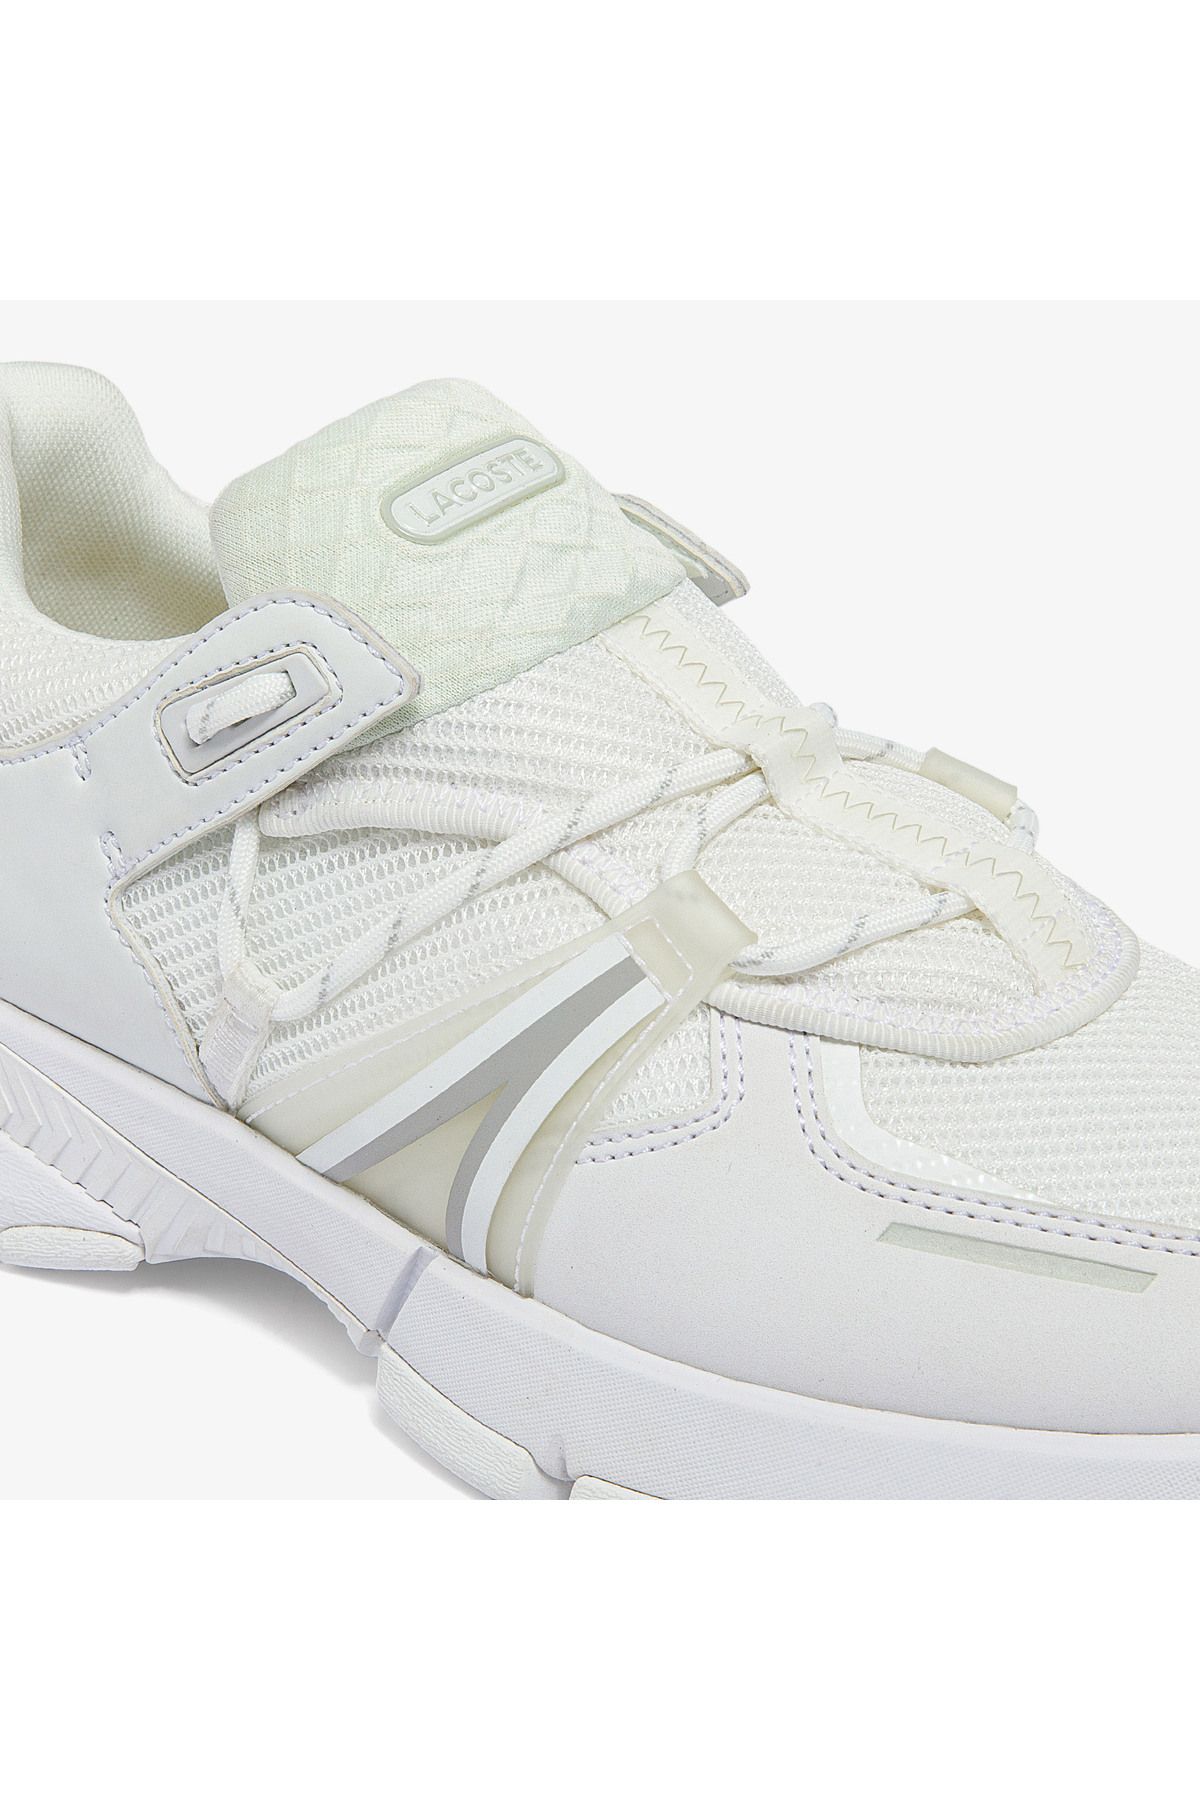 Lacoste کفش ورزشی سفید زنان L003